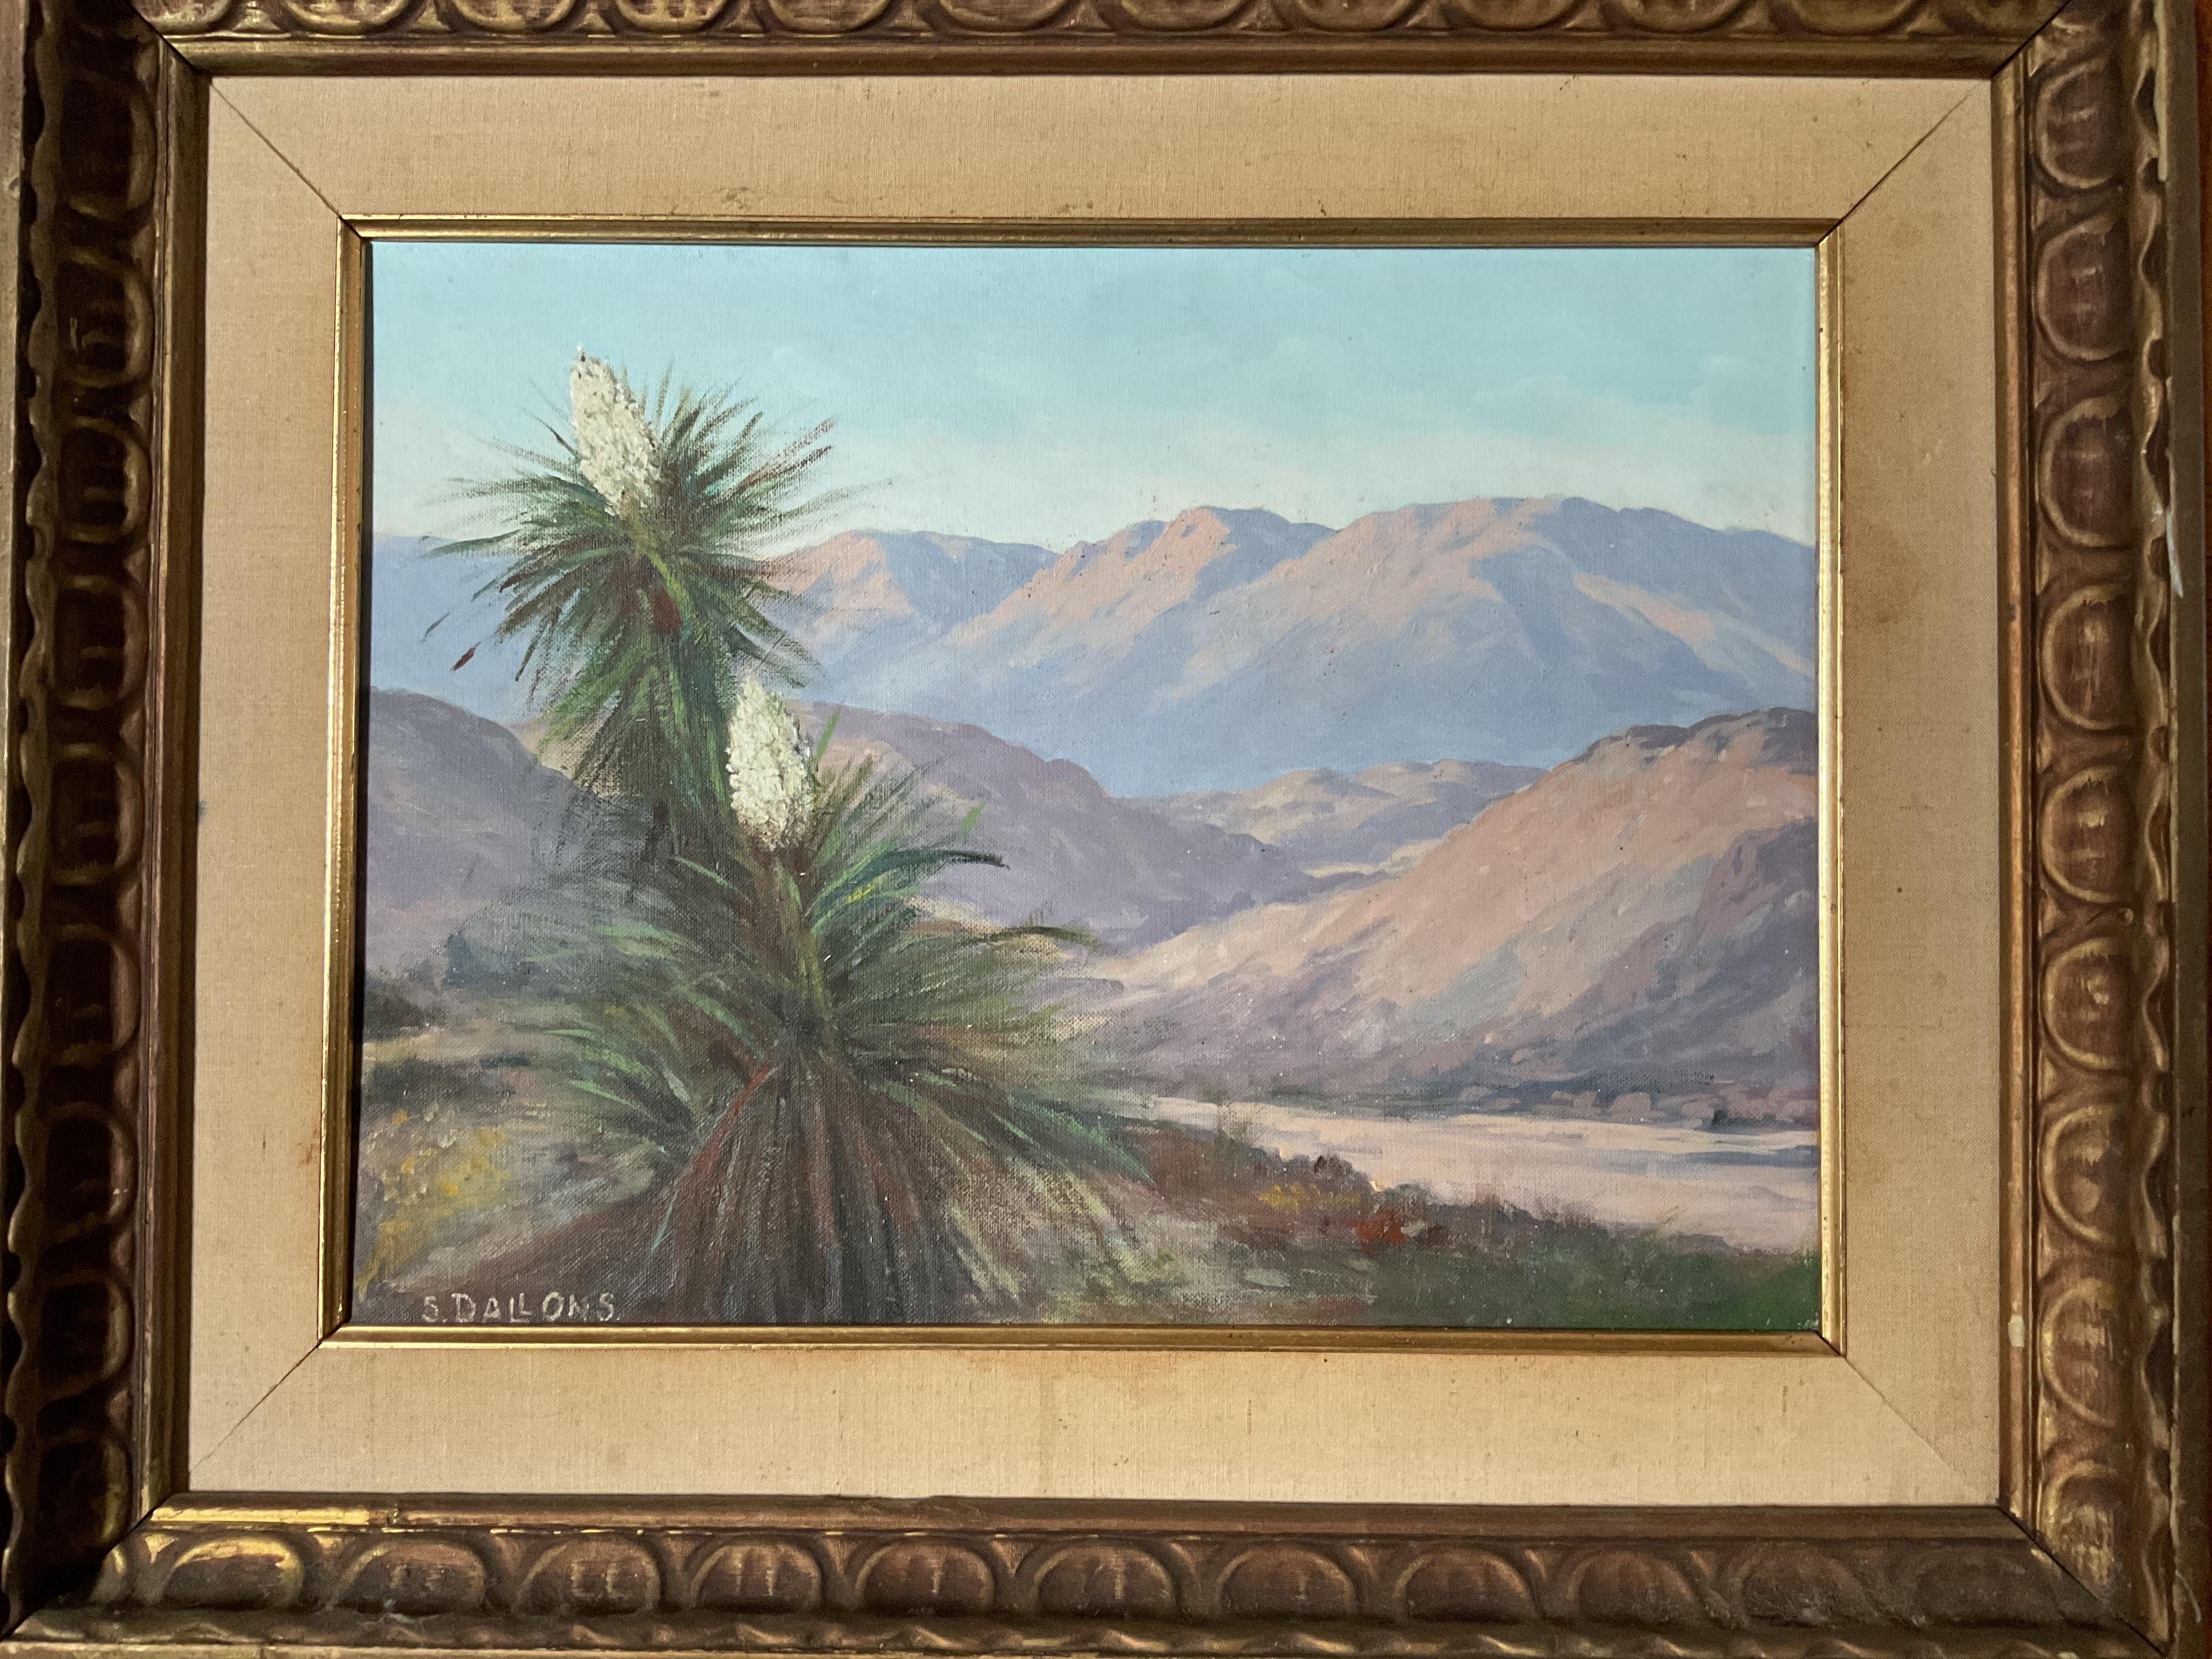 Il s'agit d'une peinture inhabituelle d'un canyon de la région de Palm Springs, en Californie du Sud.  Au premier plan, une plante indigène en fleurs, avec une belle vue rapprochée.  Il s'agit d'un portrait dans un paysage semi-aride.  Le canyon à